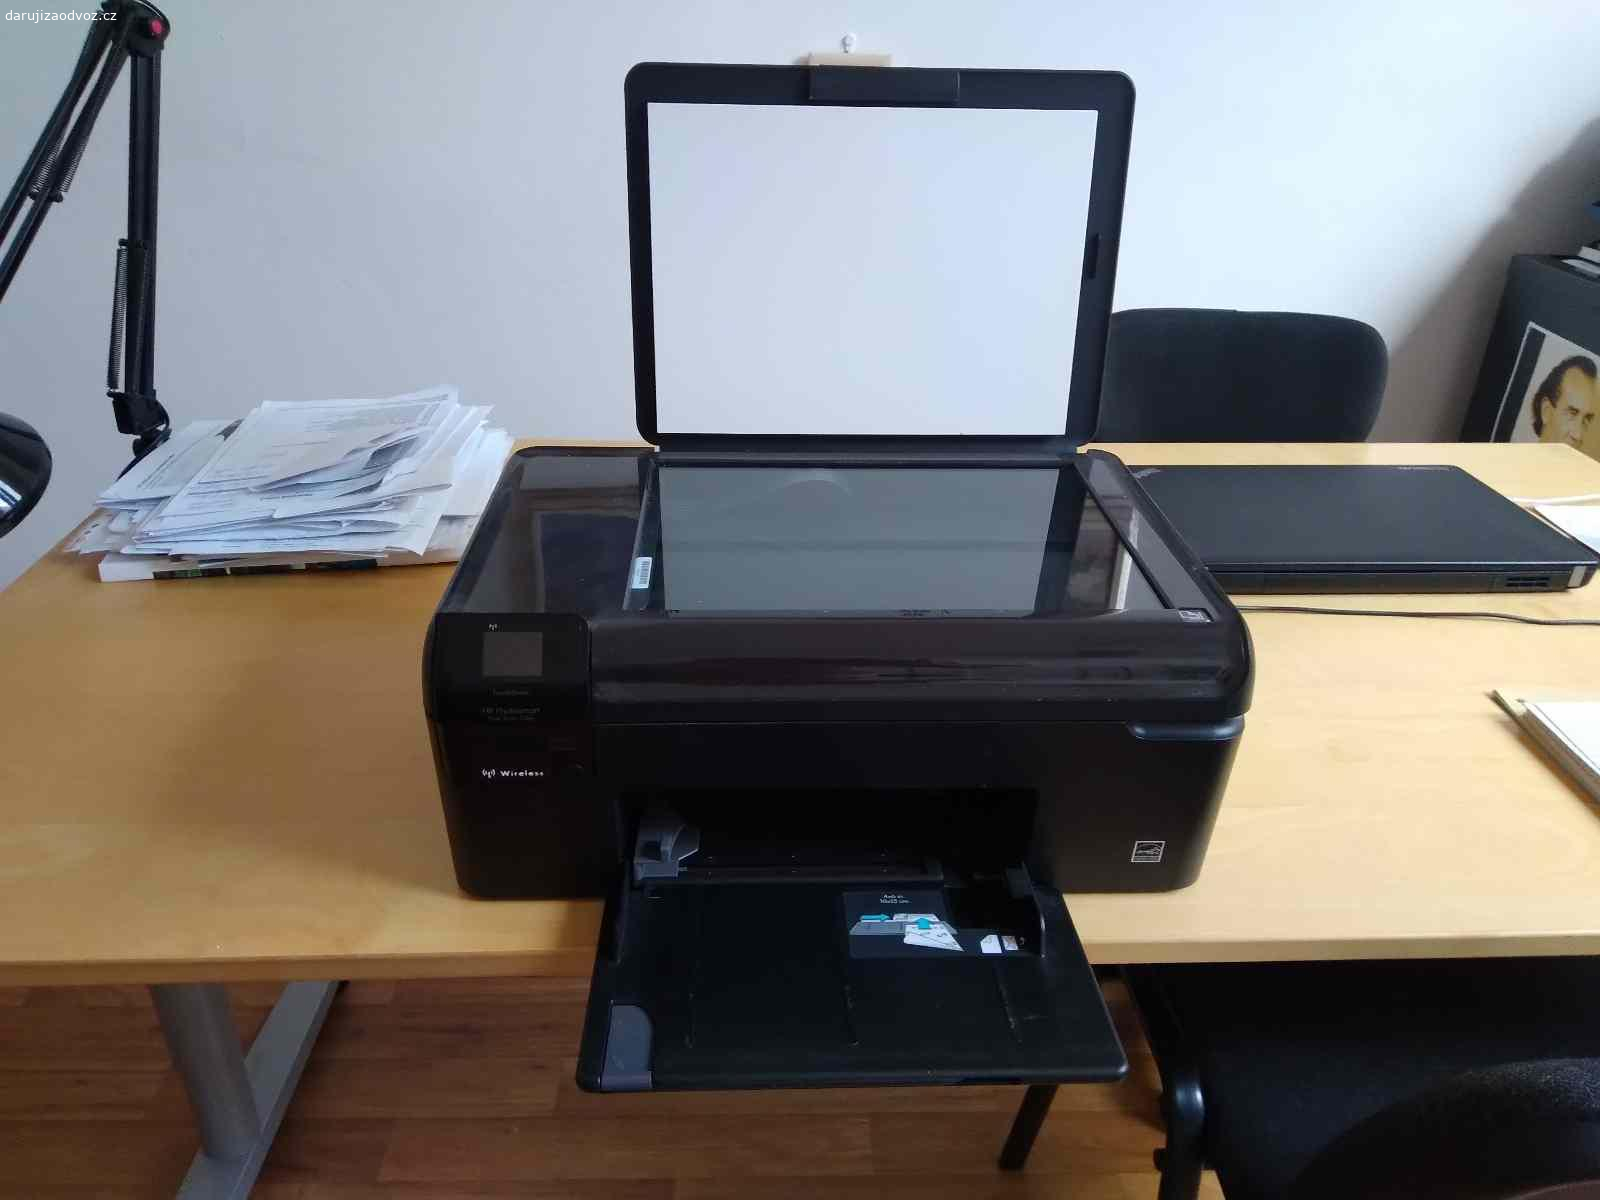 Daruji tiskárnu HP končím s podnikáním. Daruji černou inkoustovou tiskárnu HP, funkční, 43x28x16.